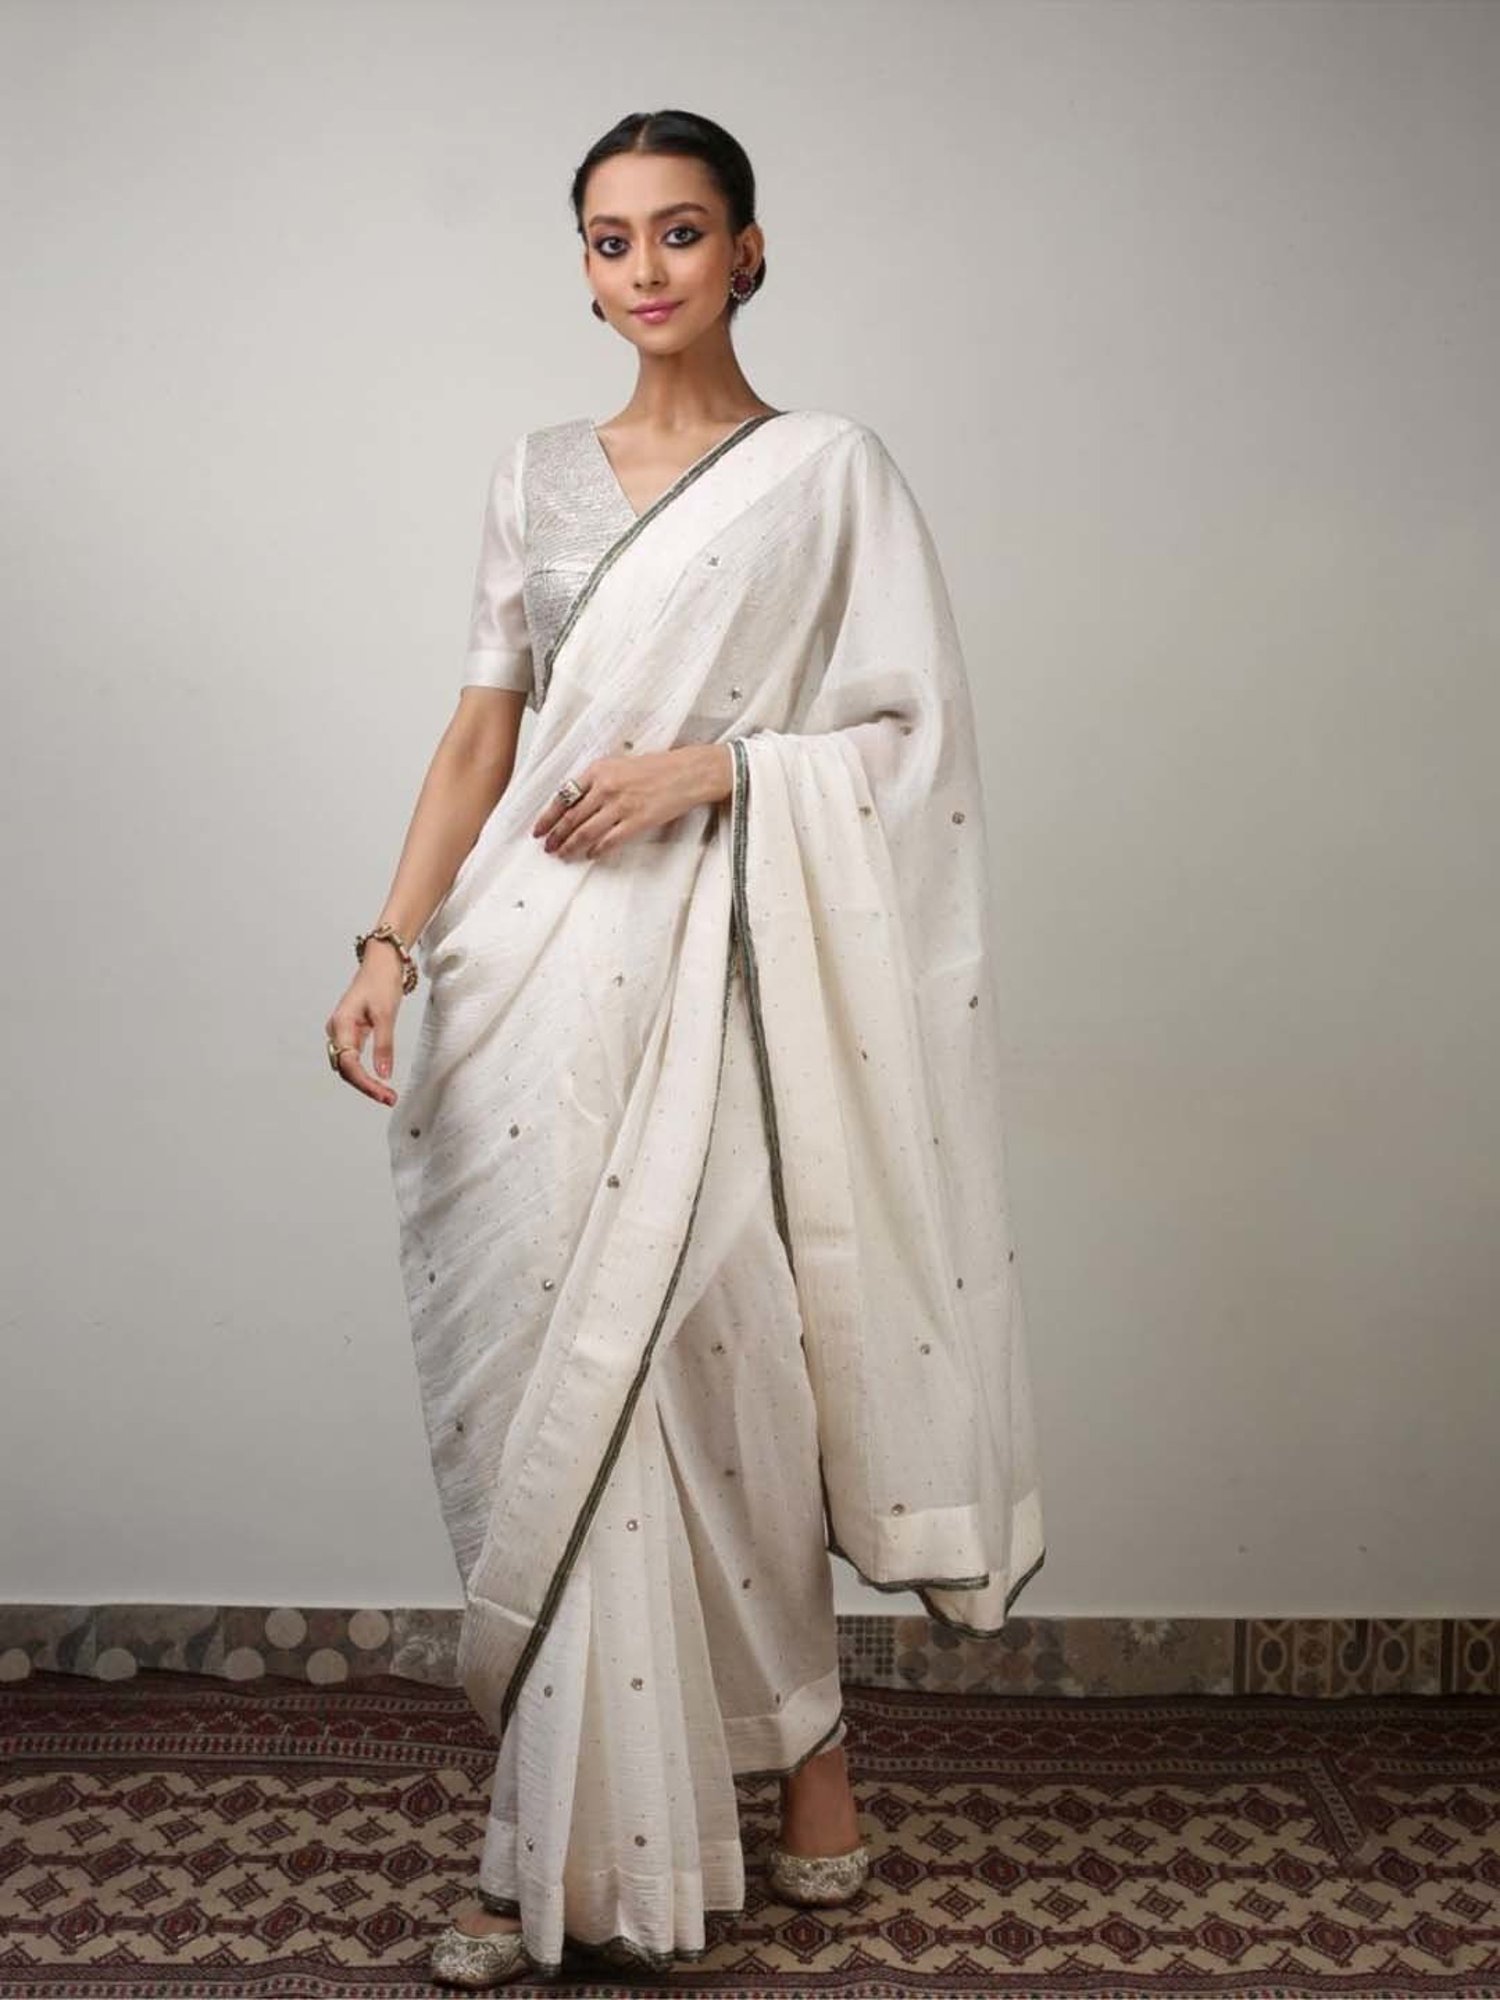 Cotton Sari Petticoat, Beautiful White Color Women Cotton